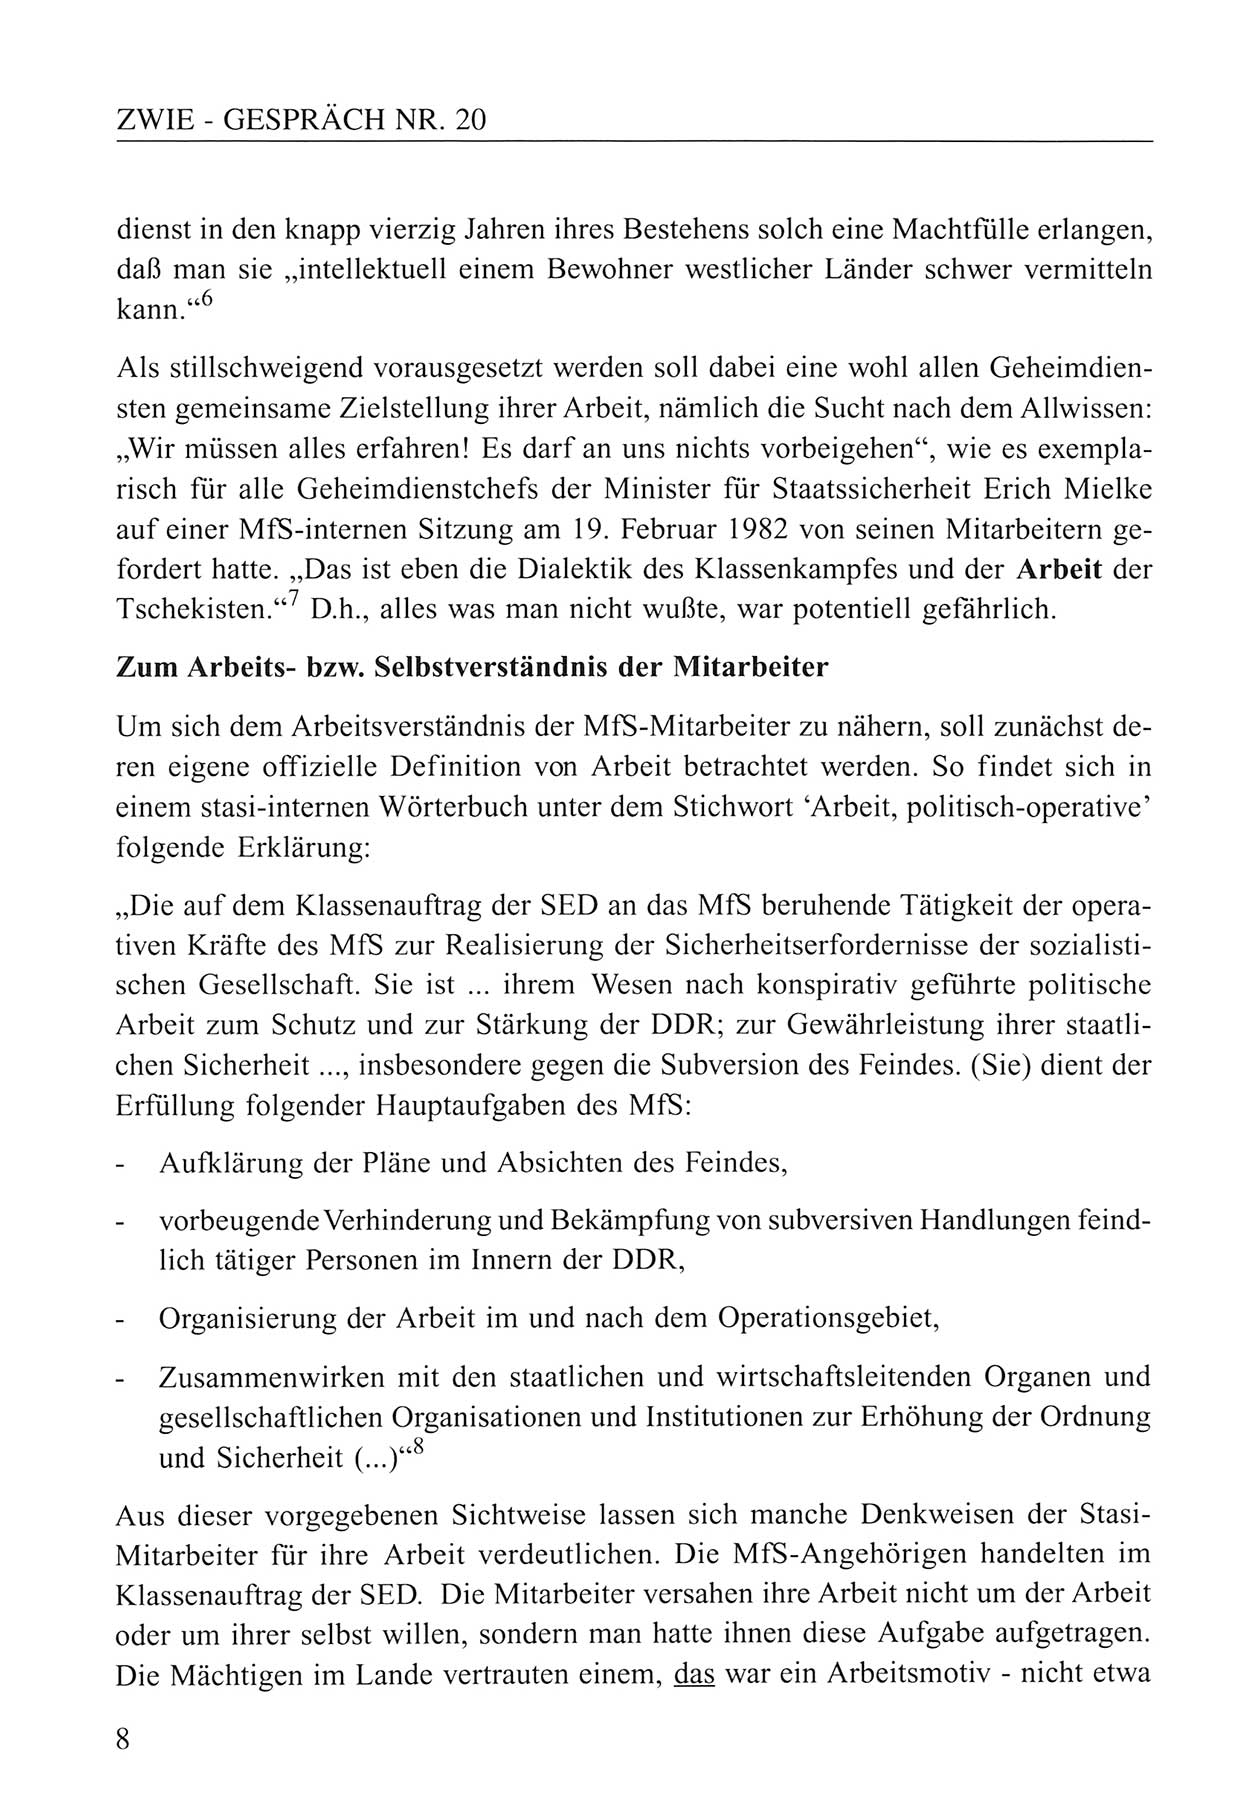 Zwie-Gespräch, Beiträge zum Umgang mit der Staatssicherheits-Vergangenheit [Deutsche Demokratische Republik (DDR)], Ausgabe Nr. 20, Berlin 1994, Seite 8 (Zwie-Gespr. Ausg. 20 1994, S. 8)